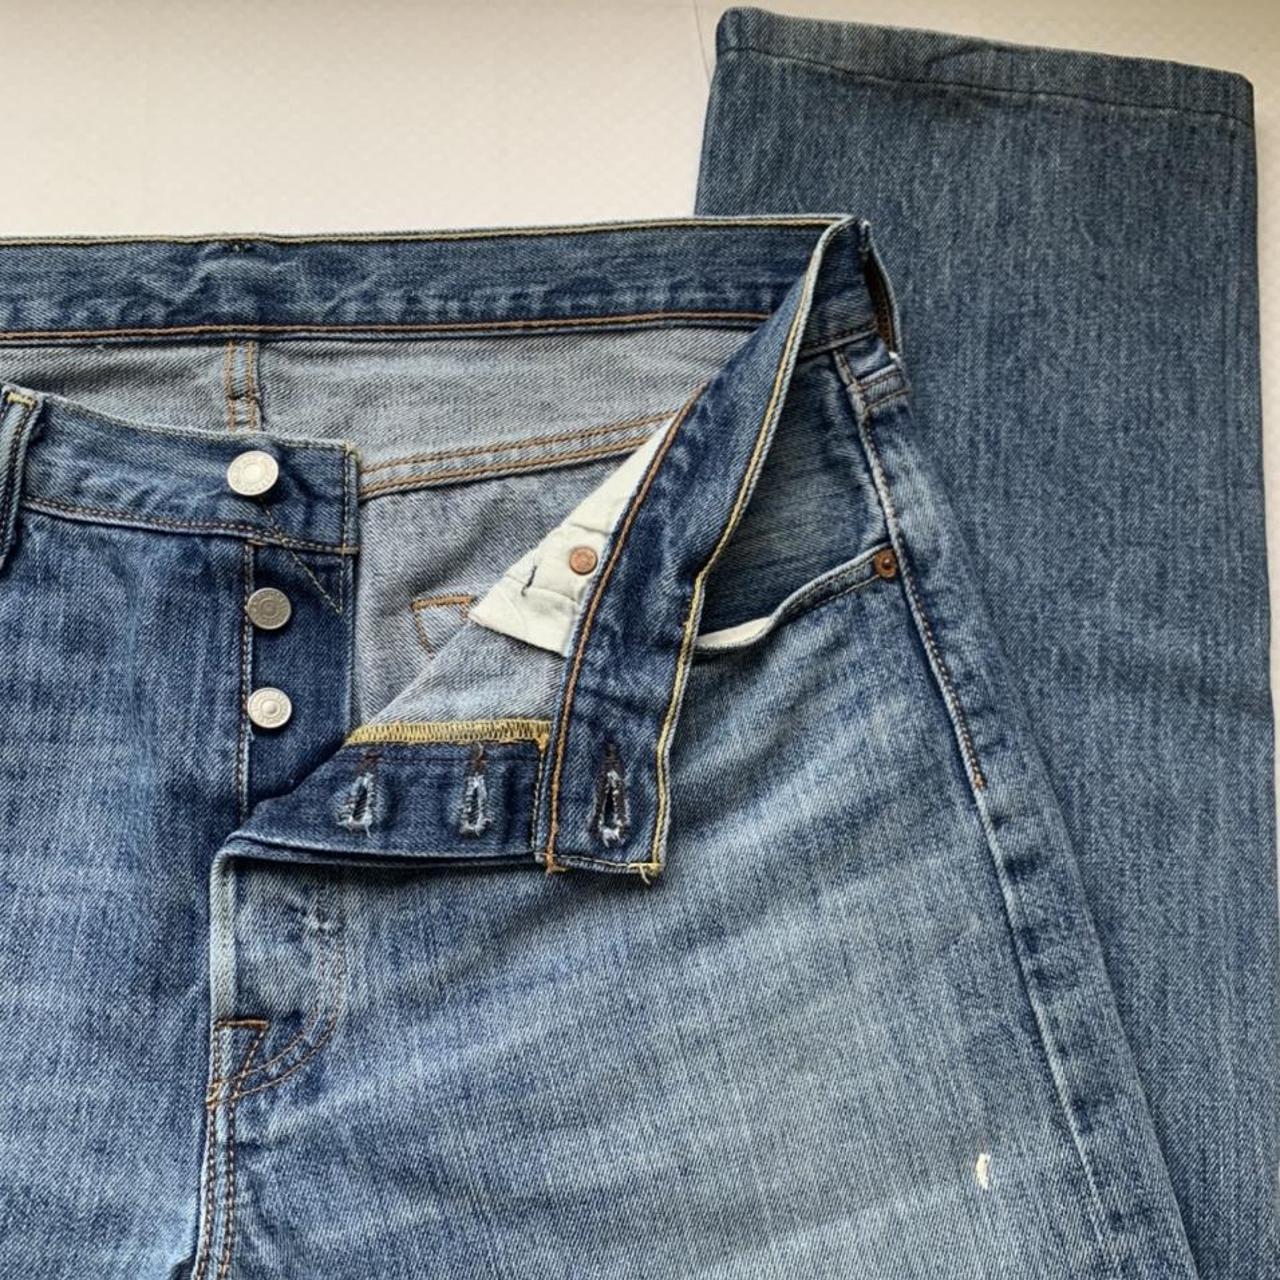 Vintage Levis 501 - nicely worn in pair of jeans -... - Depop